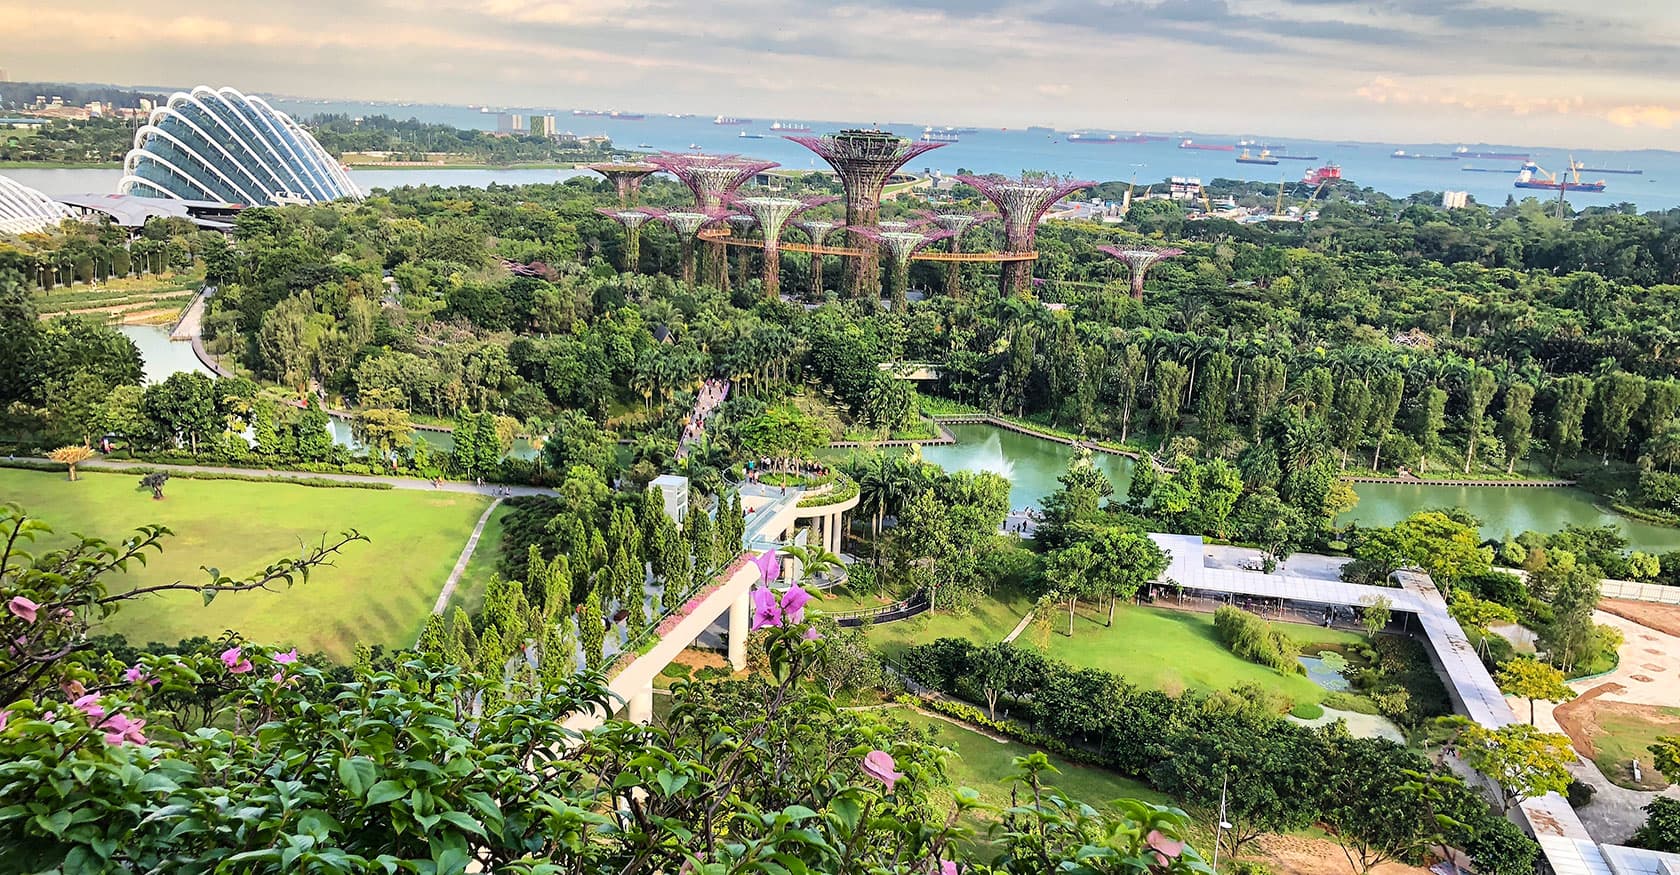 新加坡濱海灣花園（Gardens by the Bay）位於新加坡濱海灣中央的公園，2012年落成，佔地101公頃，構思開始於2006年，計畫促進新加坡由花園城市進化為「花園中的城市」。